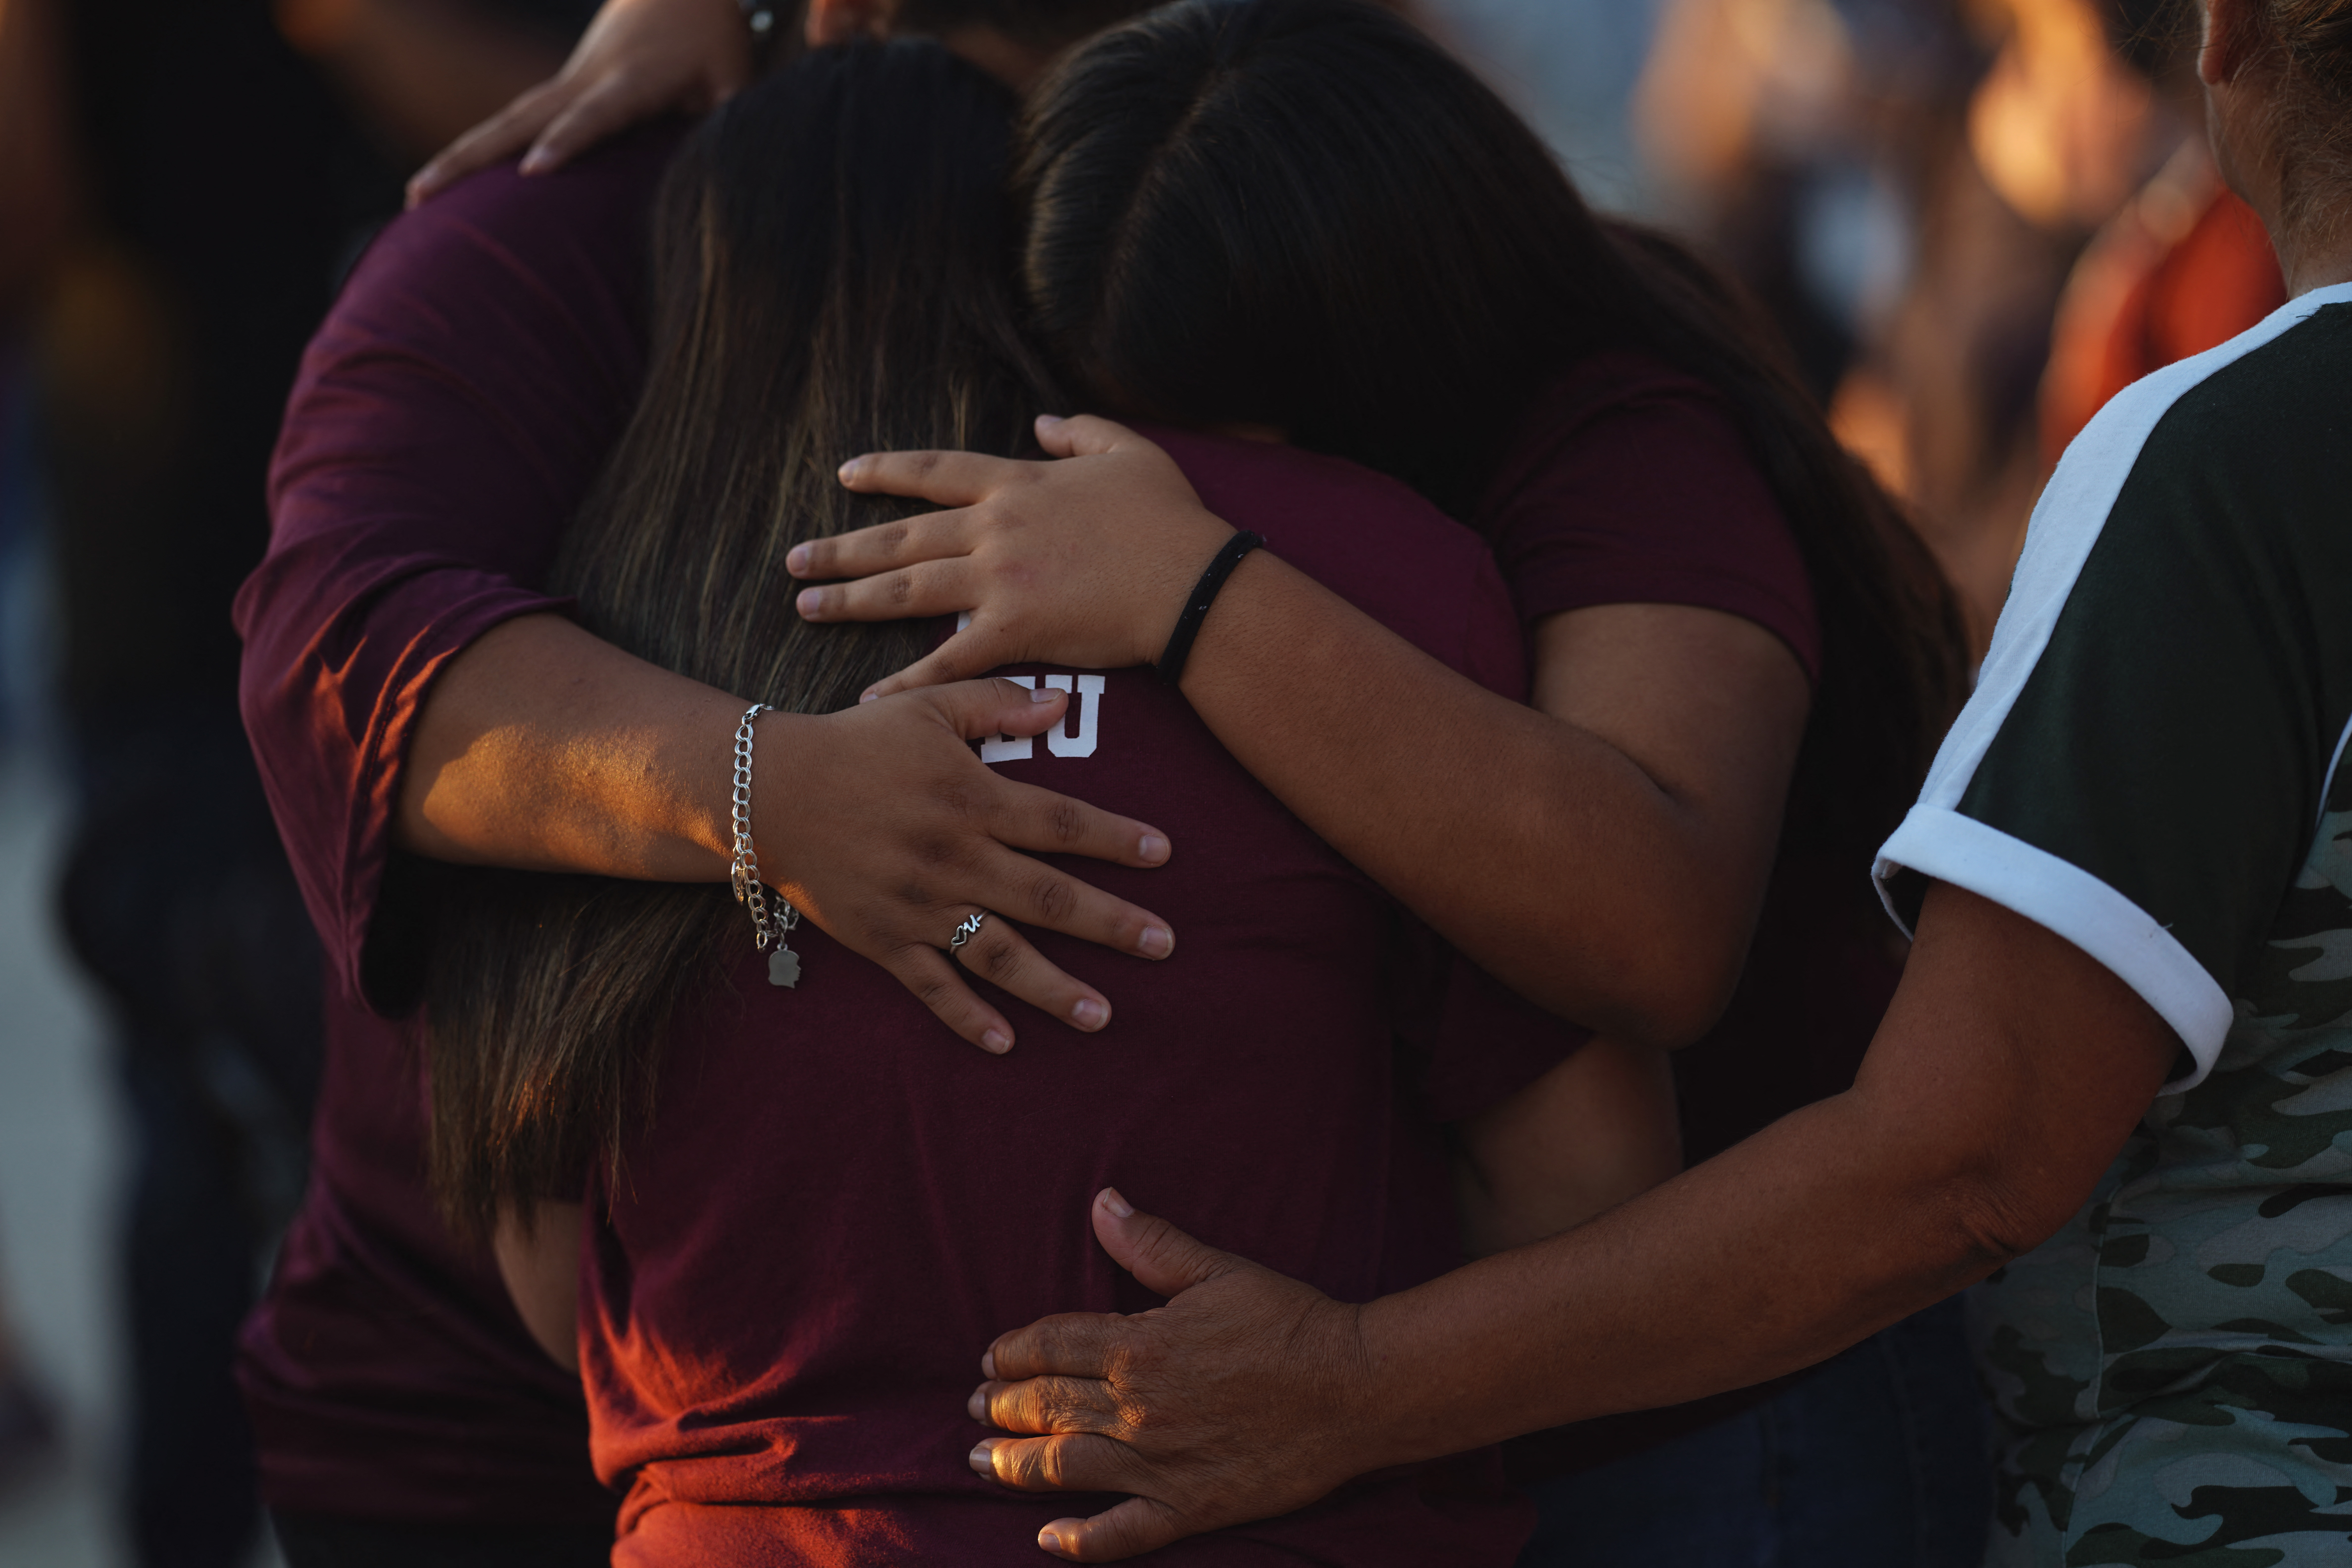 Llantos y abrazos en vigilia por las víctimas de matanza escolar en Texas (FOTOS)